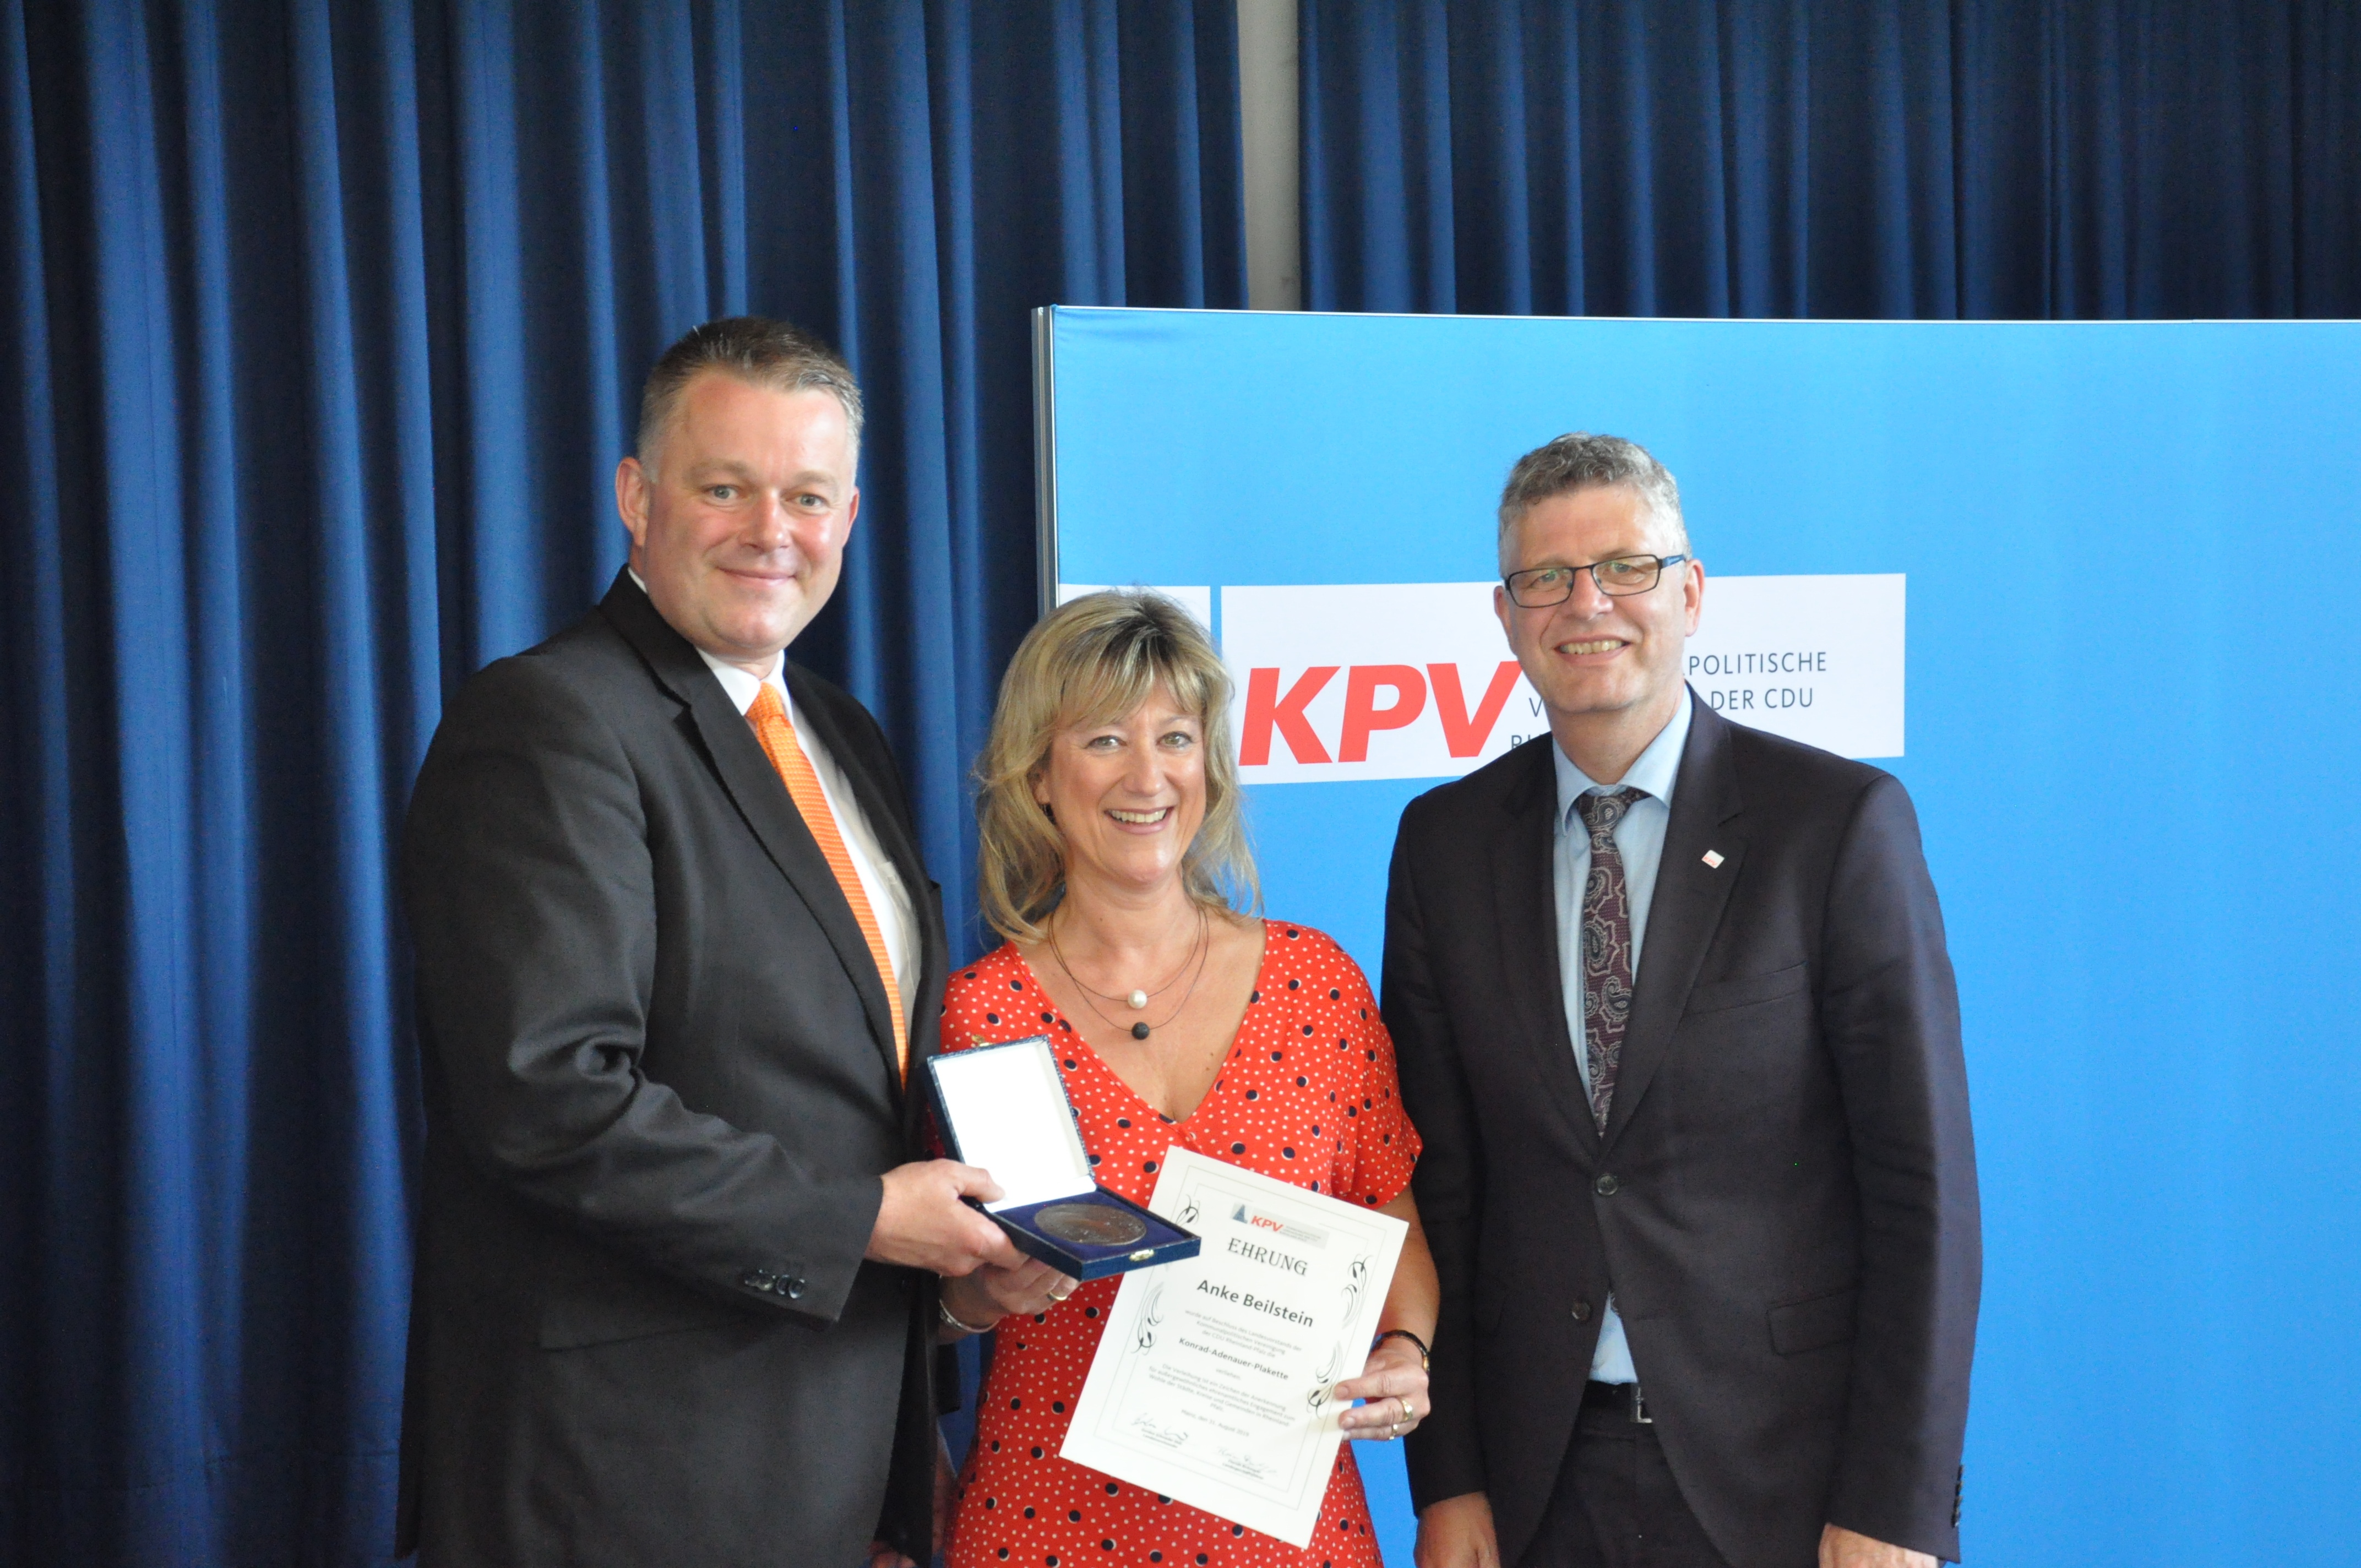 Gordon Schnieder MdL überreichte zusammen mit dem Bundesvorsitzenden, Christian Haase MdB, Anke Beilstein MdL für ihre langjährige Tätigkeit in der KPV die Konrad-Adenauer-Plakette. 